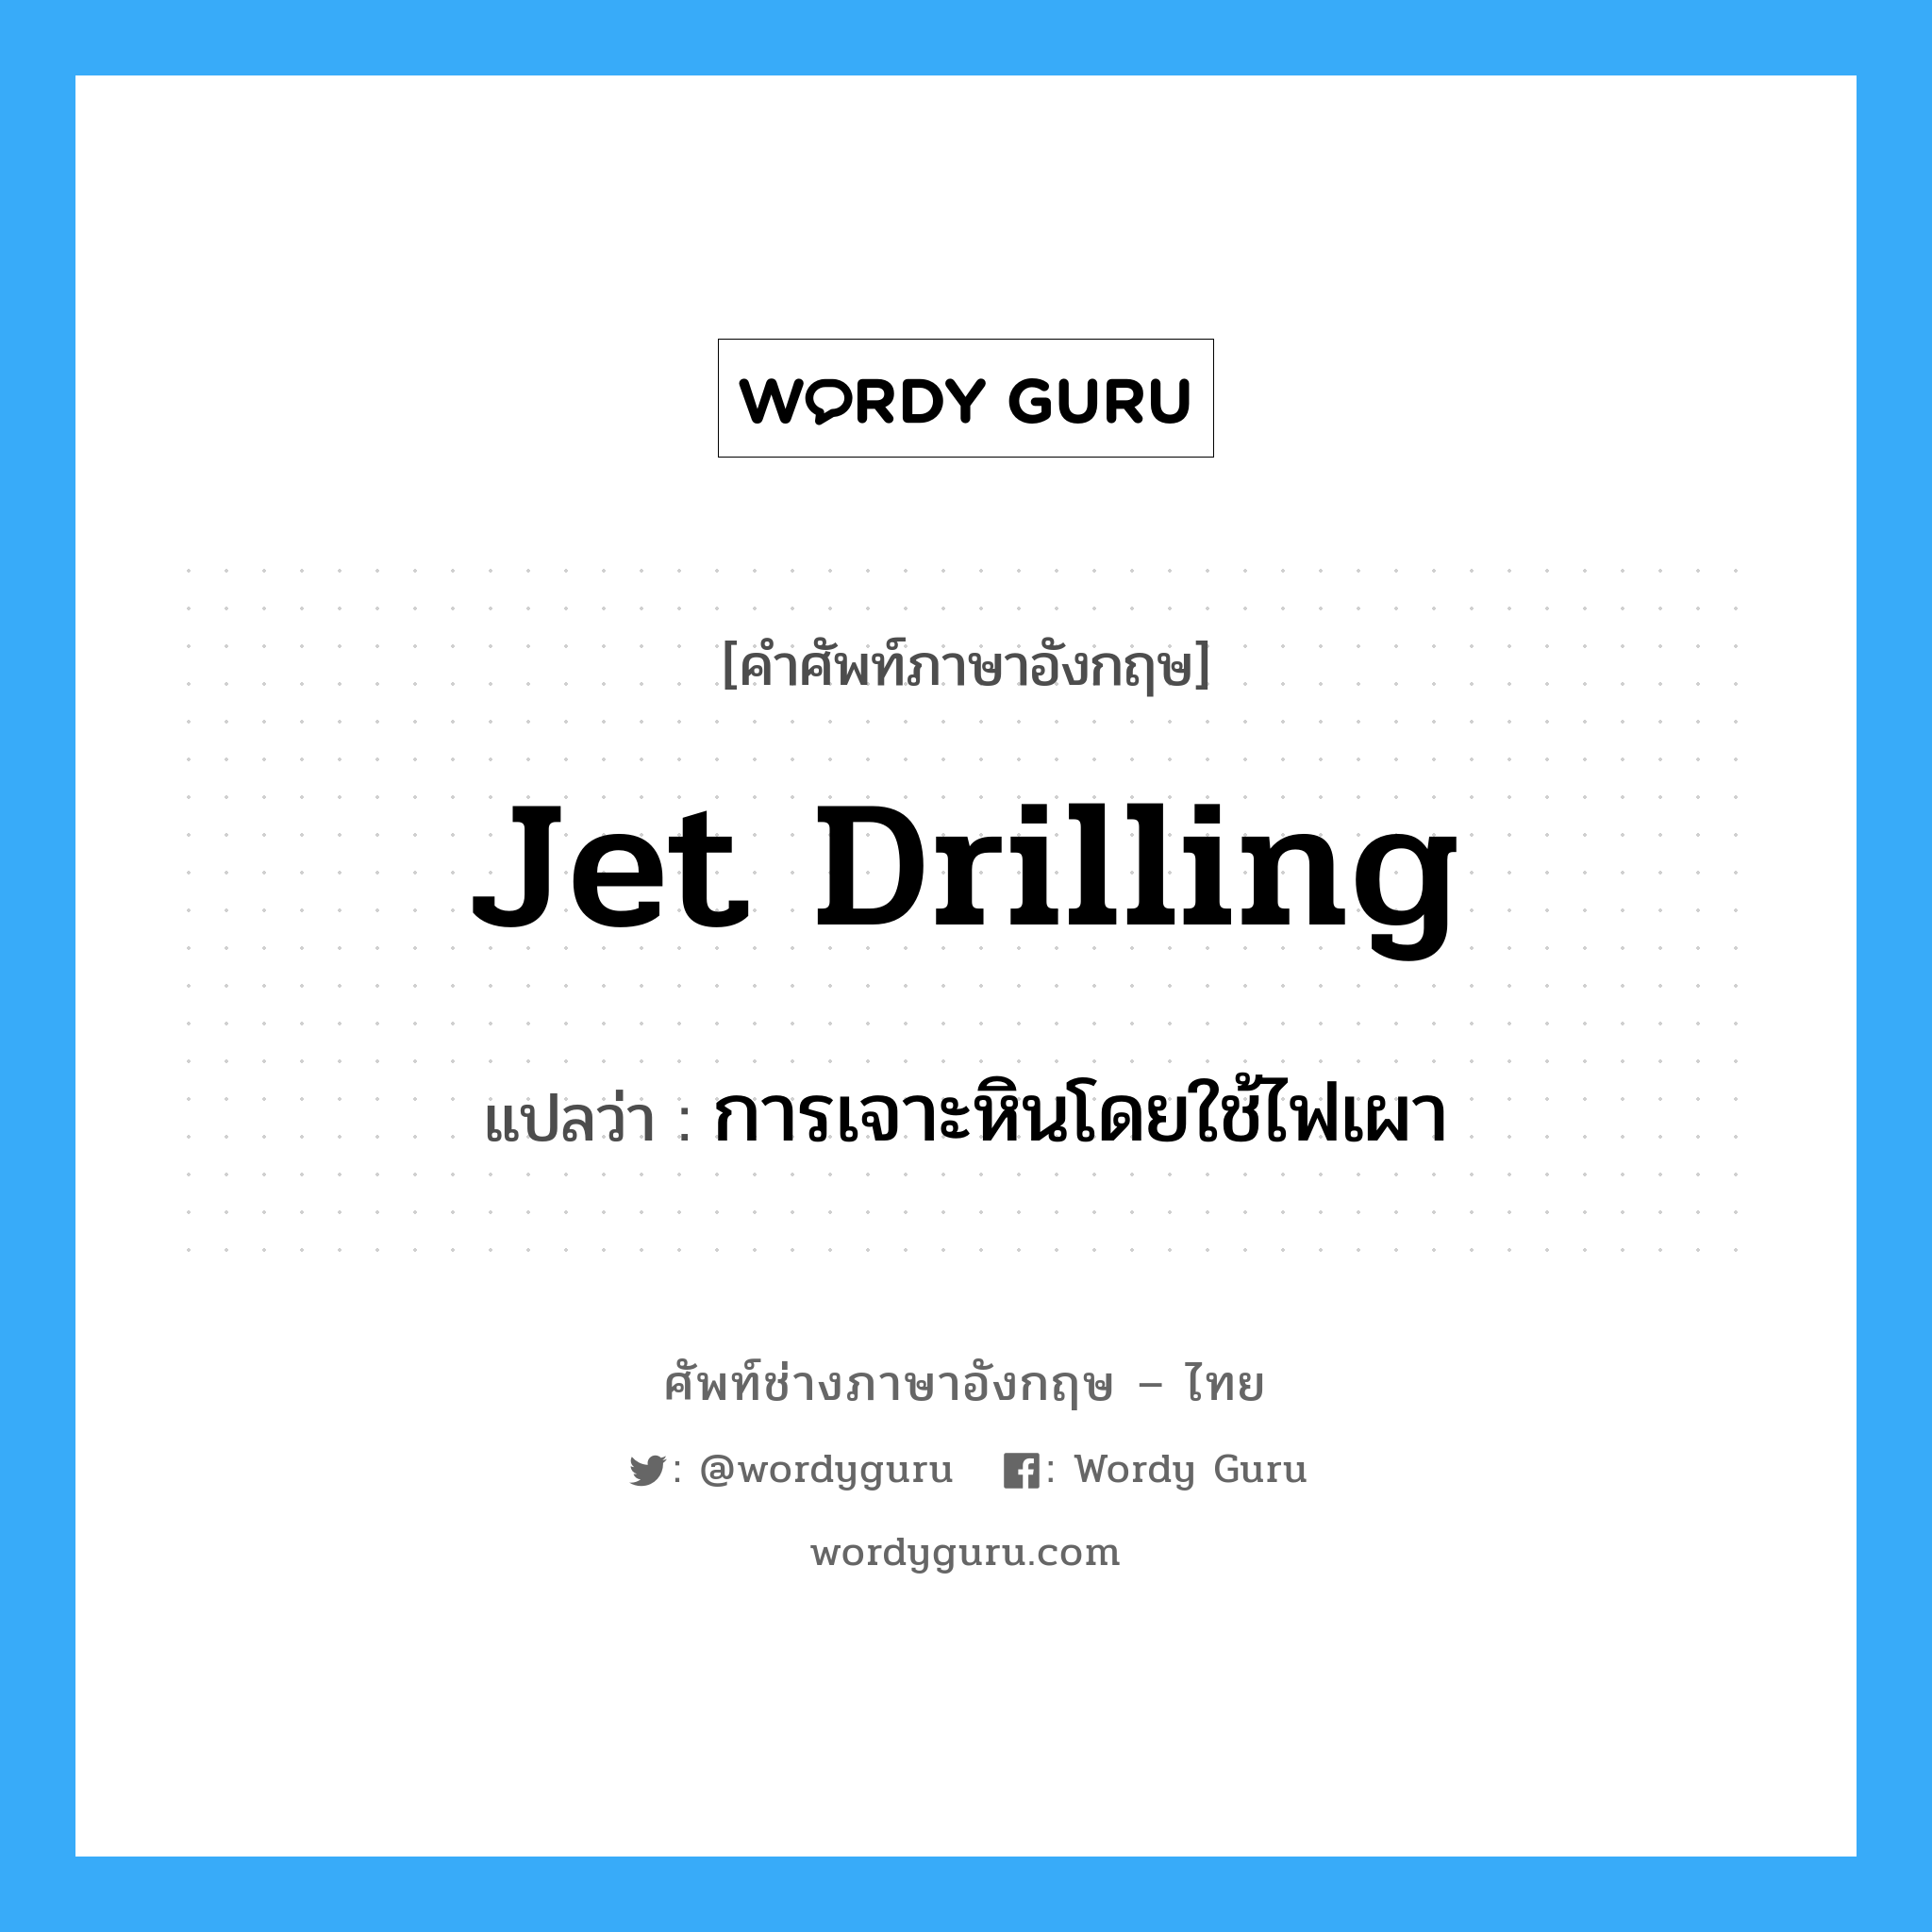 การเจาะหินโดยใช้ไฟเผา ภาษาอังกฤษ?, คำศัพท์ช่างภาษาอังกฤษ - ไทย การเจาะหินโดยใช้ไฟเผา คำศัพท์ภาษาอังกฤษ การเจาะหินโดยใช้ไฟเผา แปลว่า jet drilling